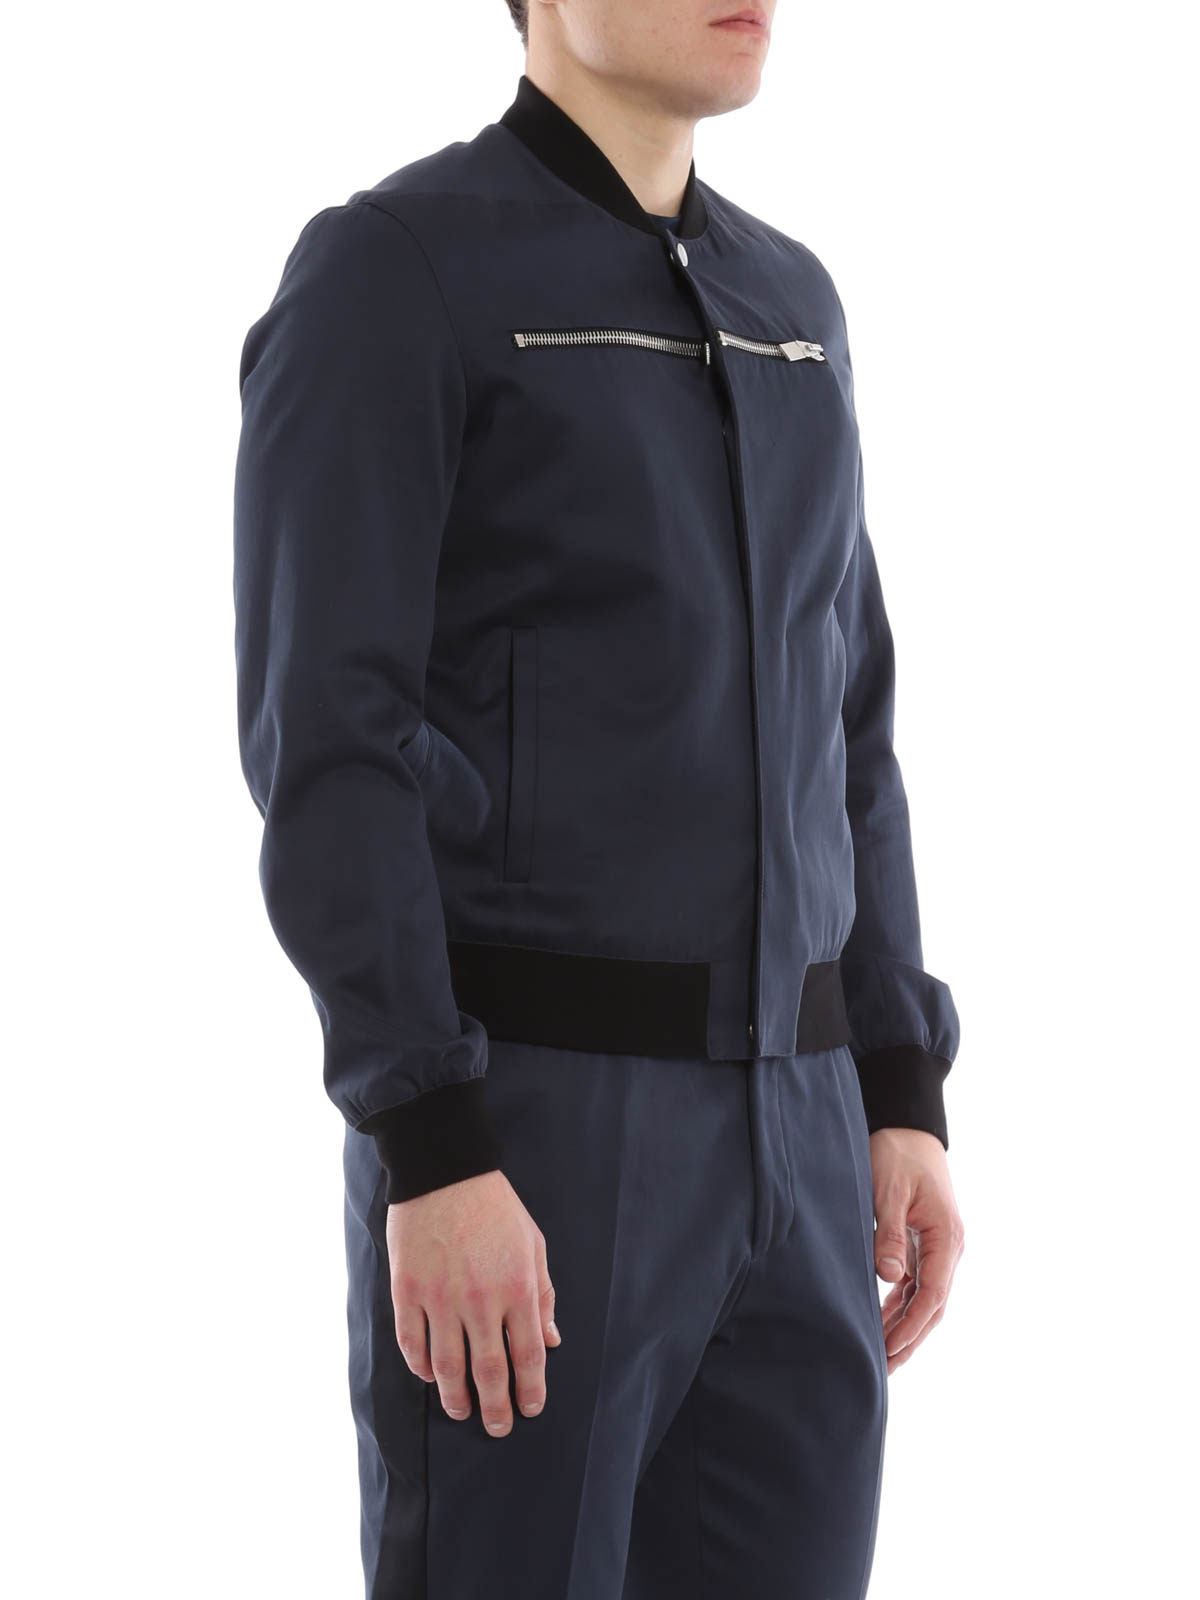 ボンバージャケット Balenciaga - Zip detailed bomber jacket 